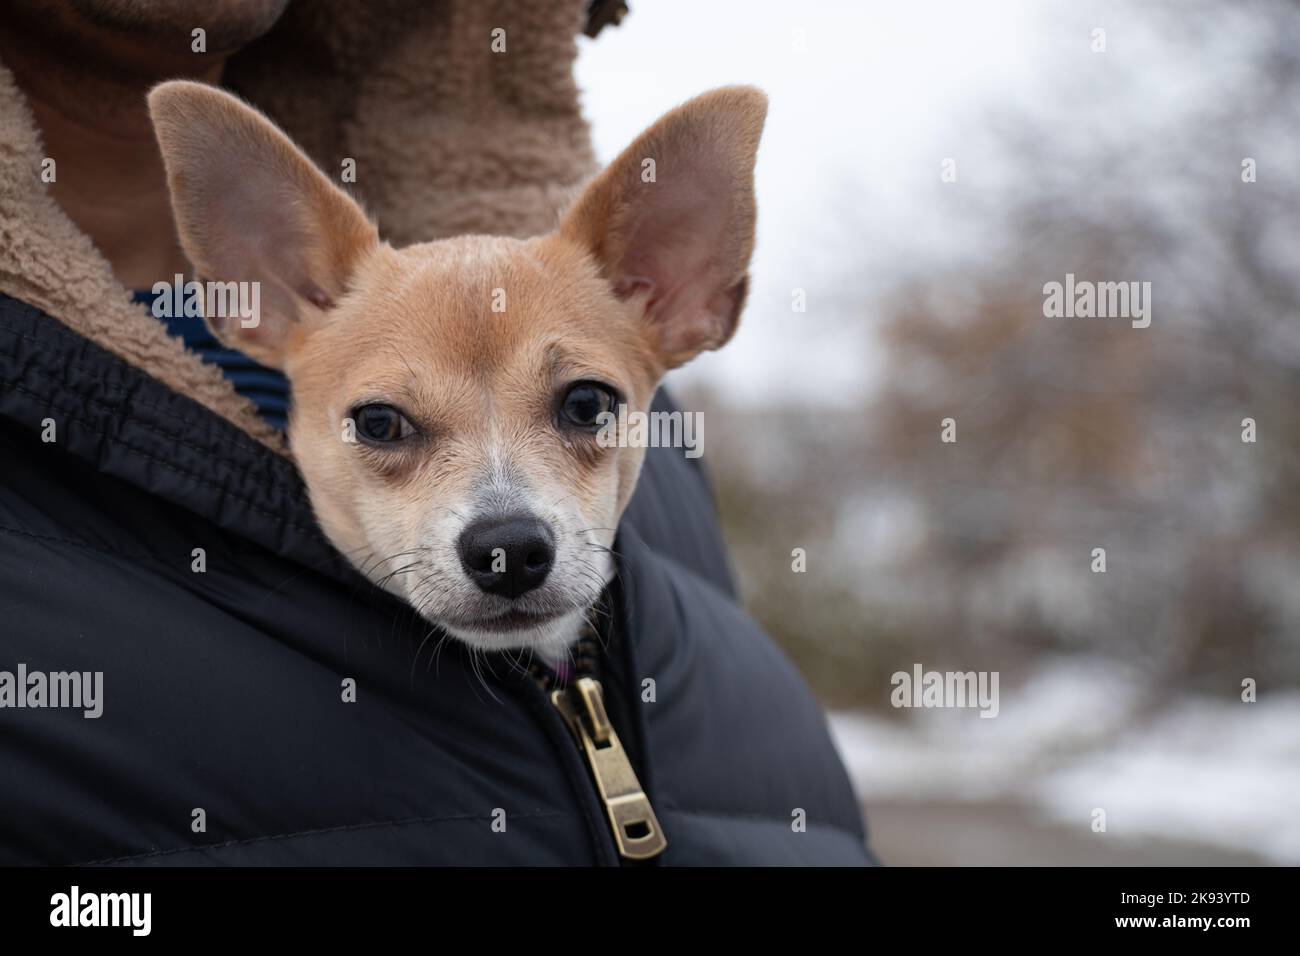 Un cane chihuahua si siede in una giacca da uomo per una passeggiata in inverno sulla strada, il cane si congela e si siede in una giacca al freddo Foto Stock